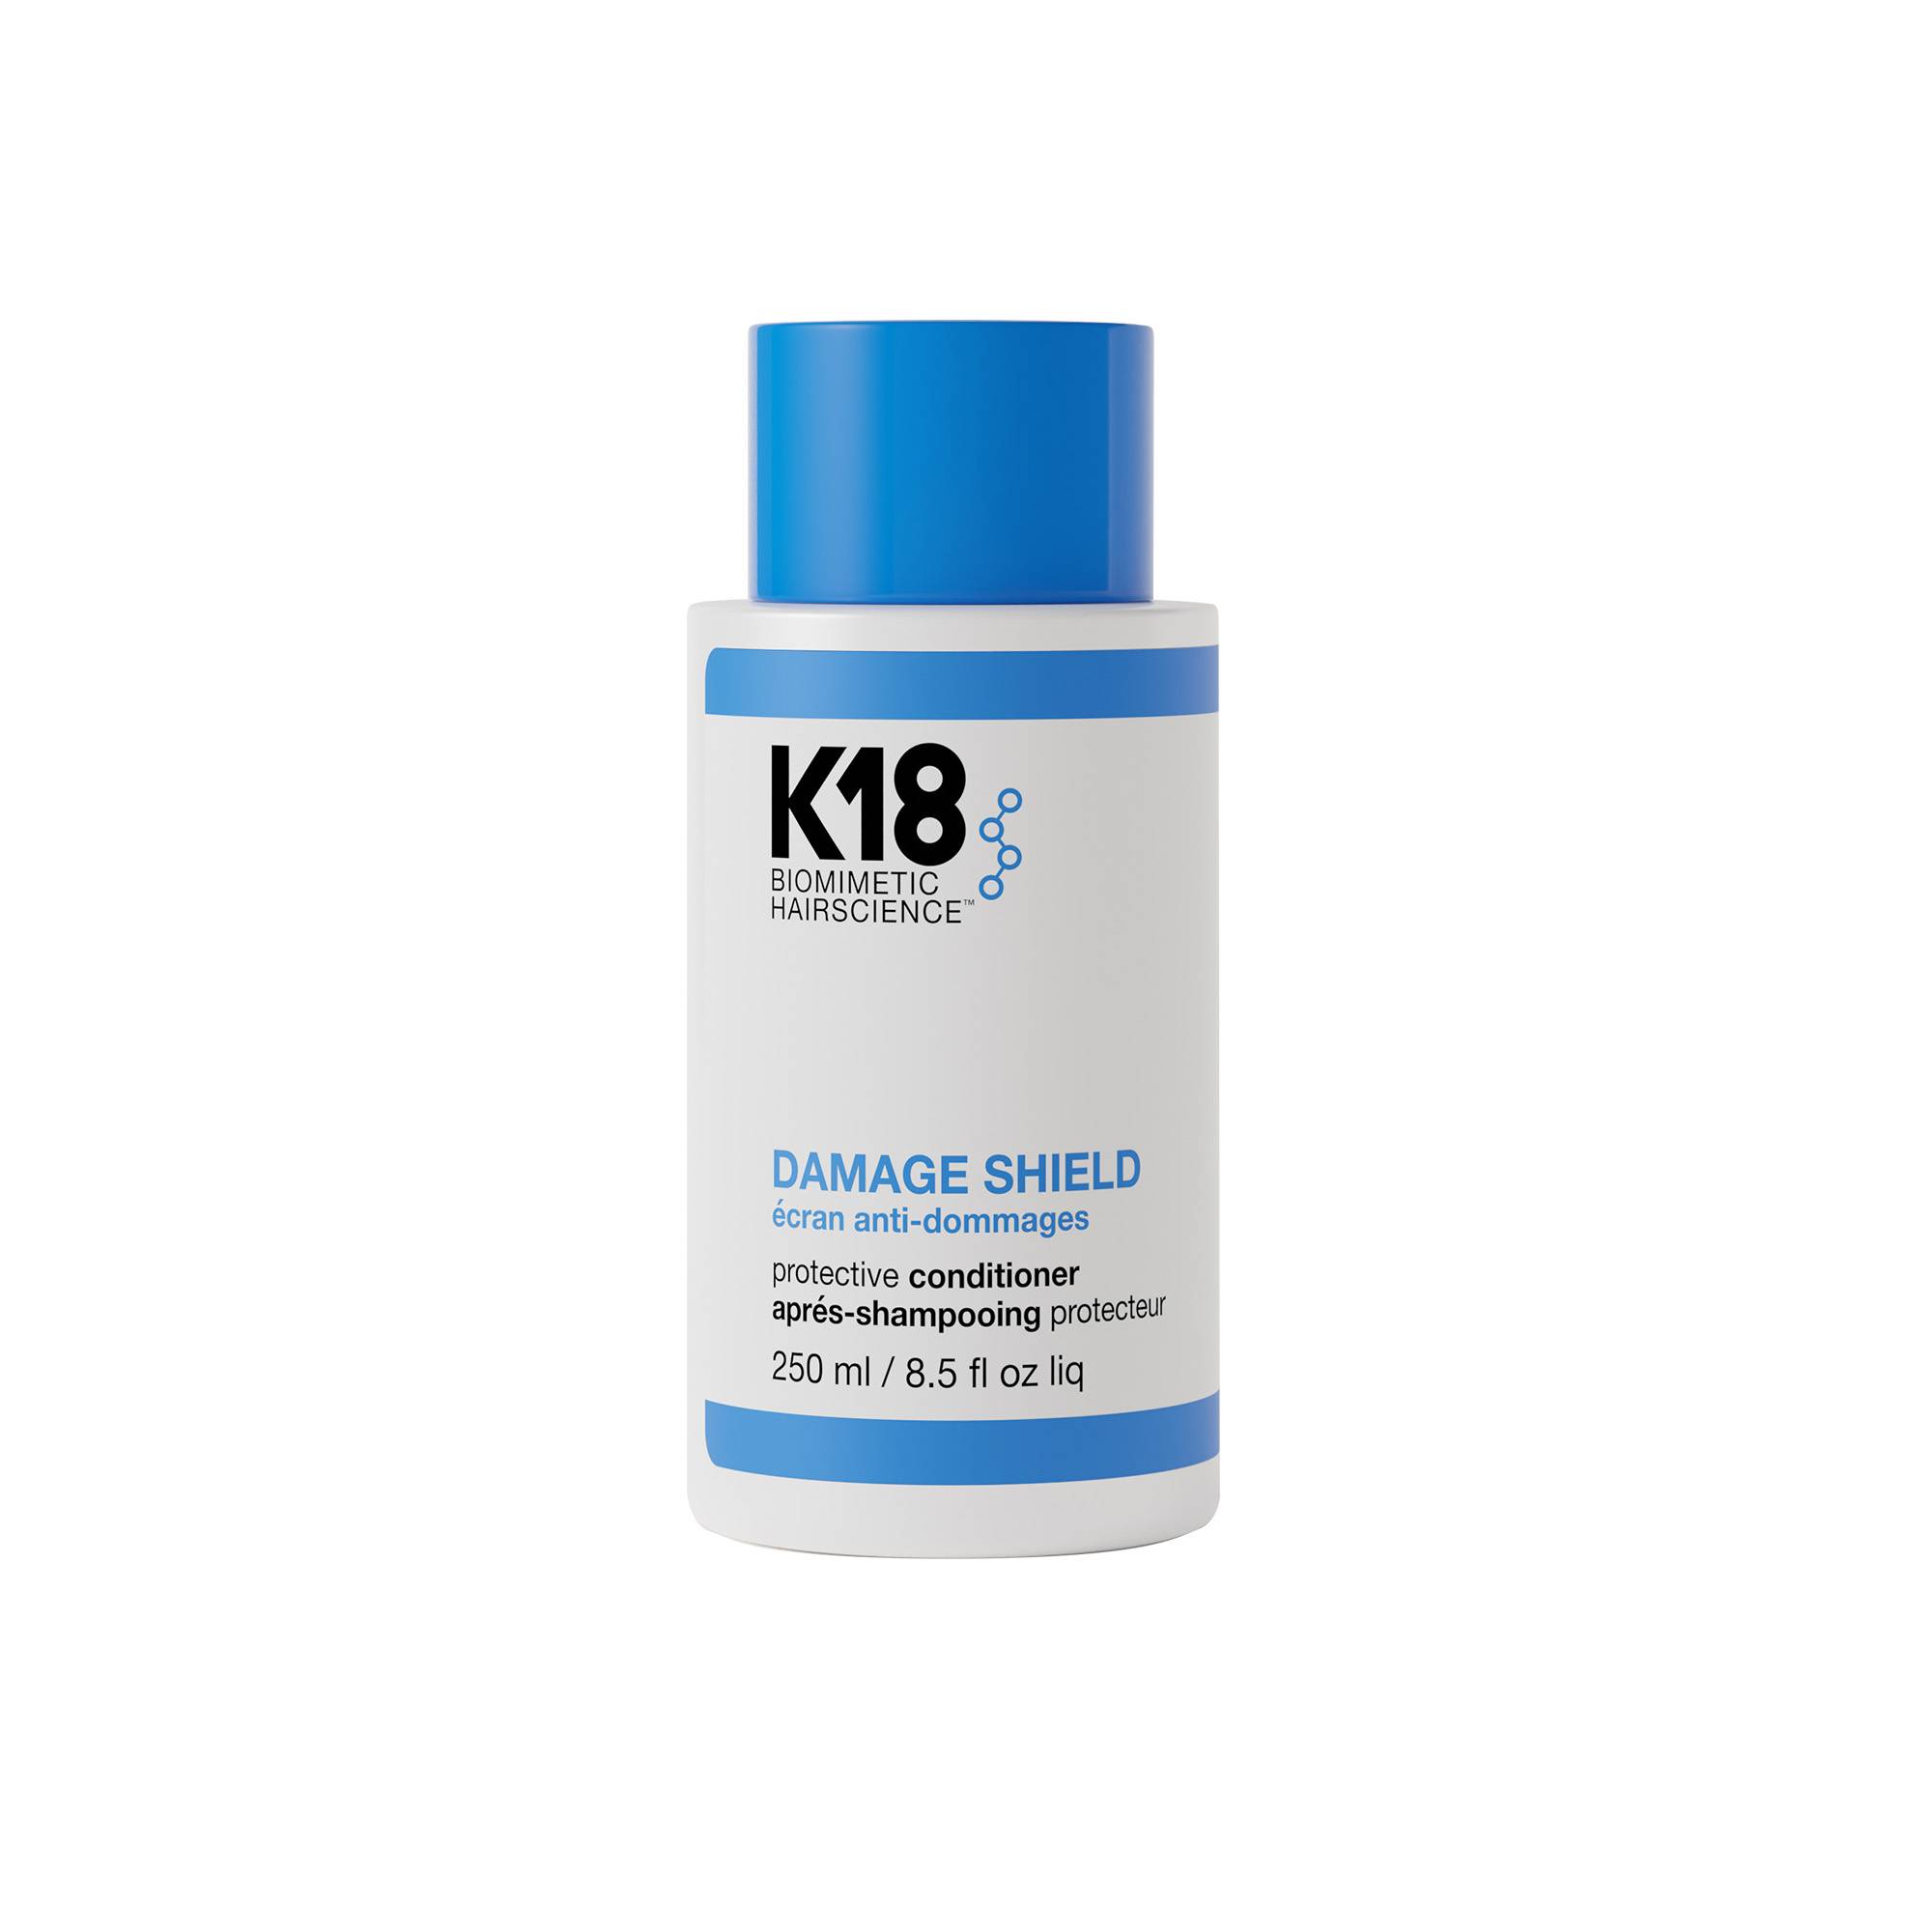 Après-Shampoing protecteur Damage Shield de la marque K18 Biomimetic HairScience Contenance 250ml - 1